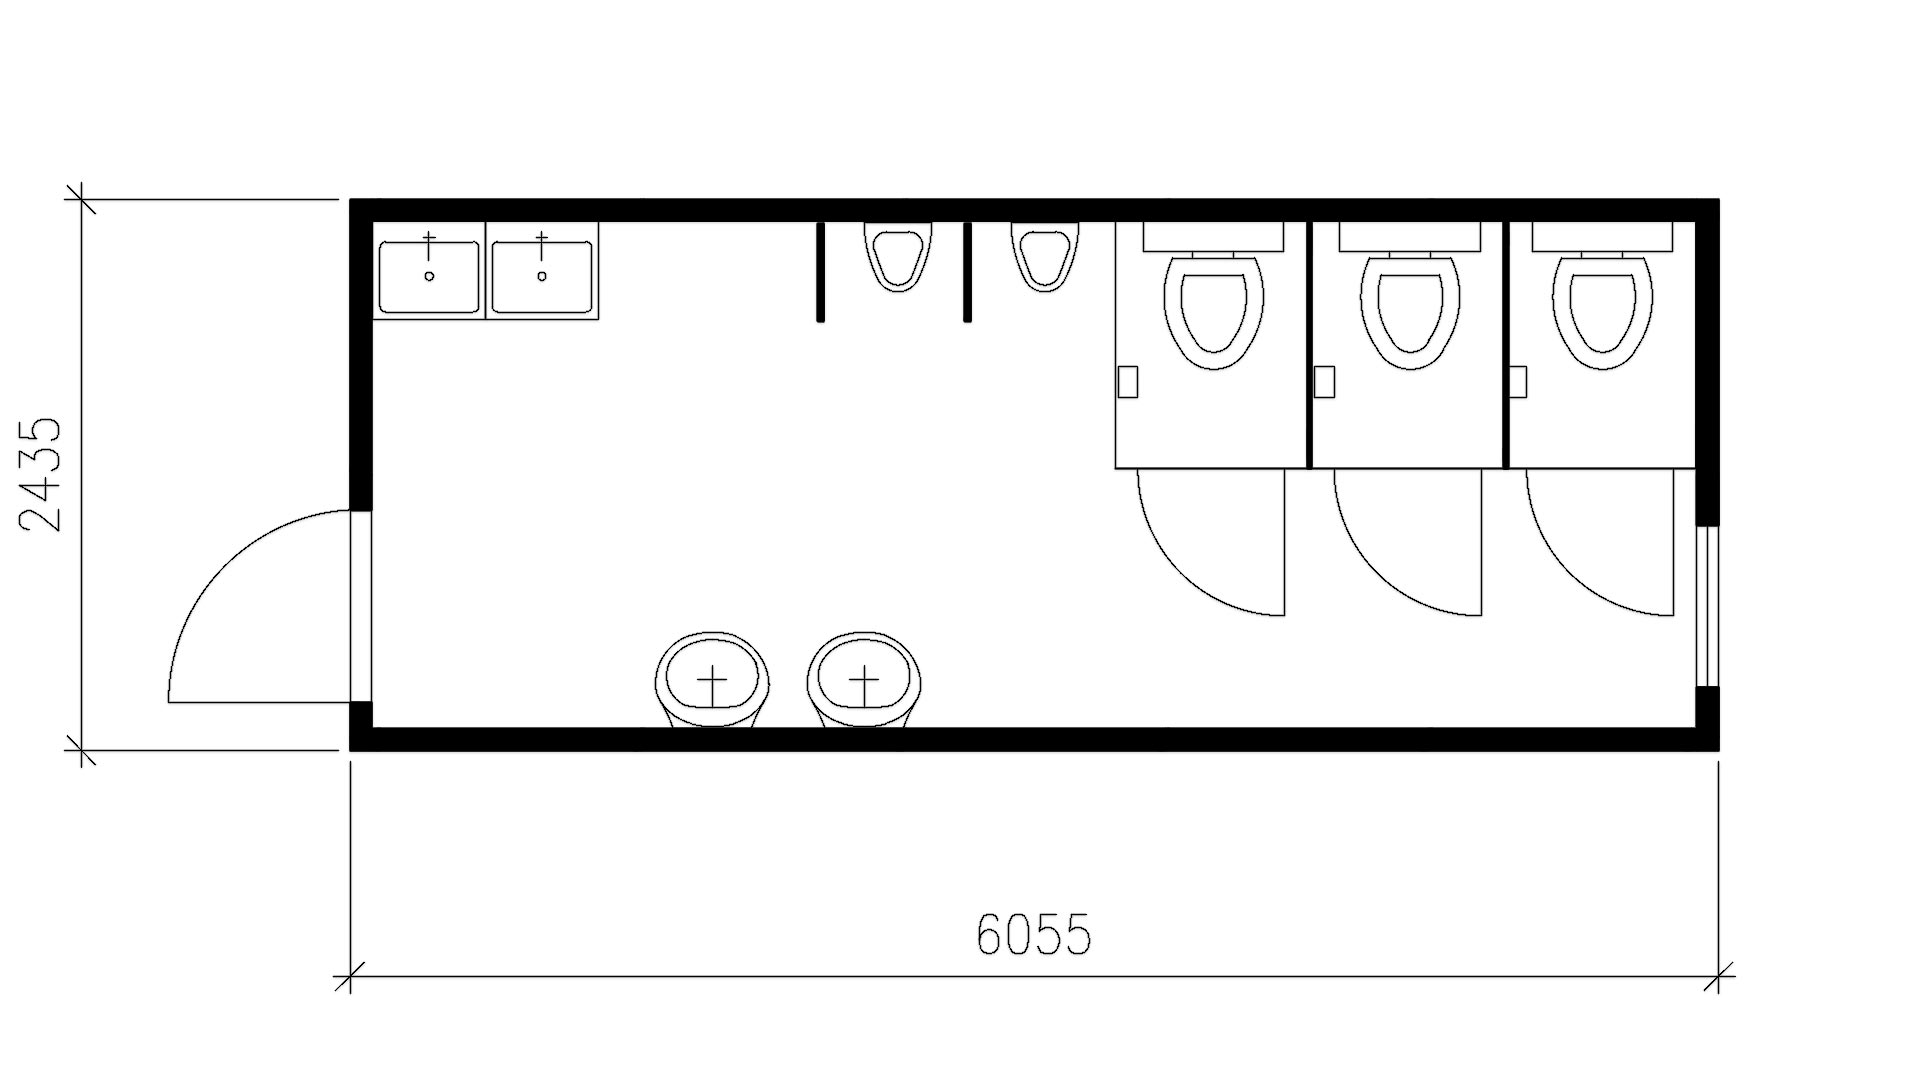 Планировка блок контейнера туалет (3 кабины, 2 писсуара, 2 умывальника, 2 чистка сапог) 20-футов, размеры: 6055/2435/2750 (Д/Ш/В) в мм